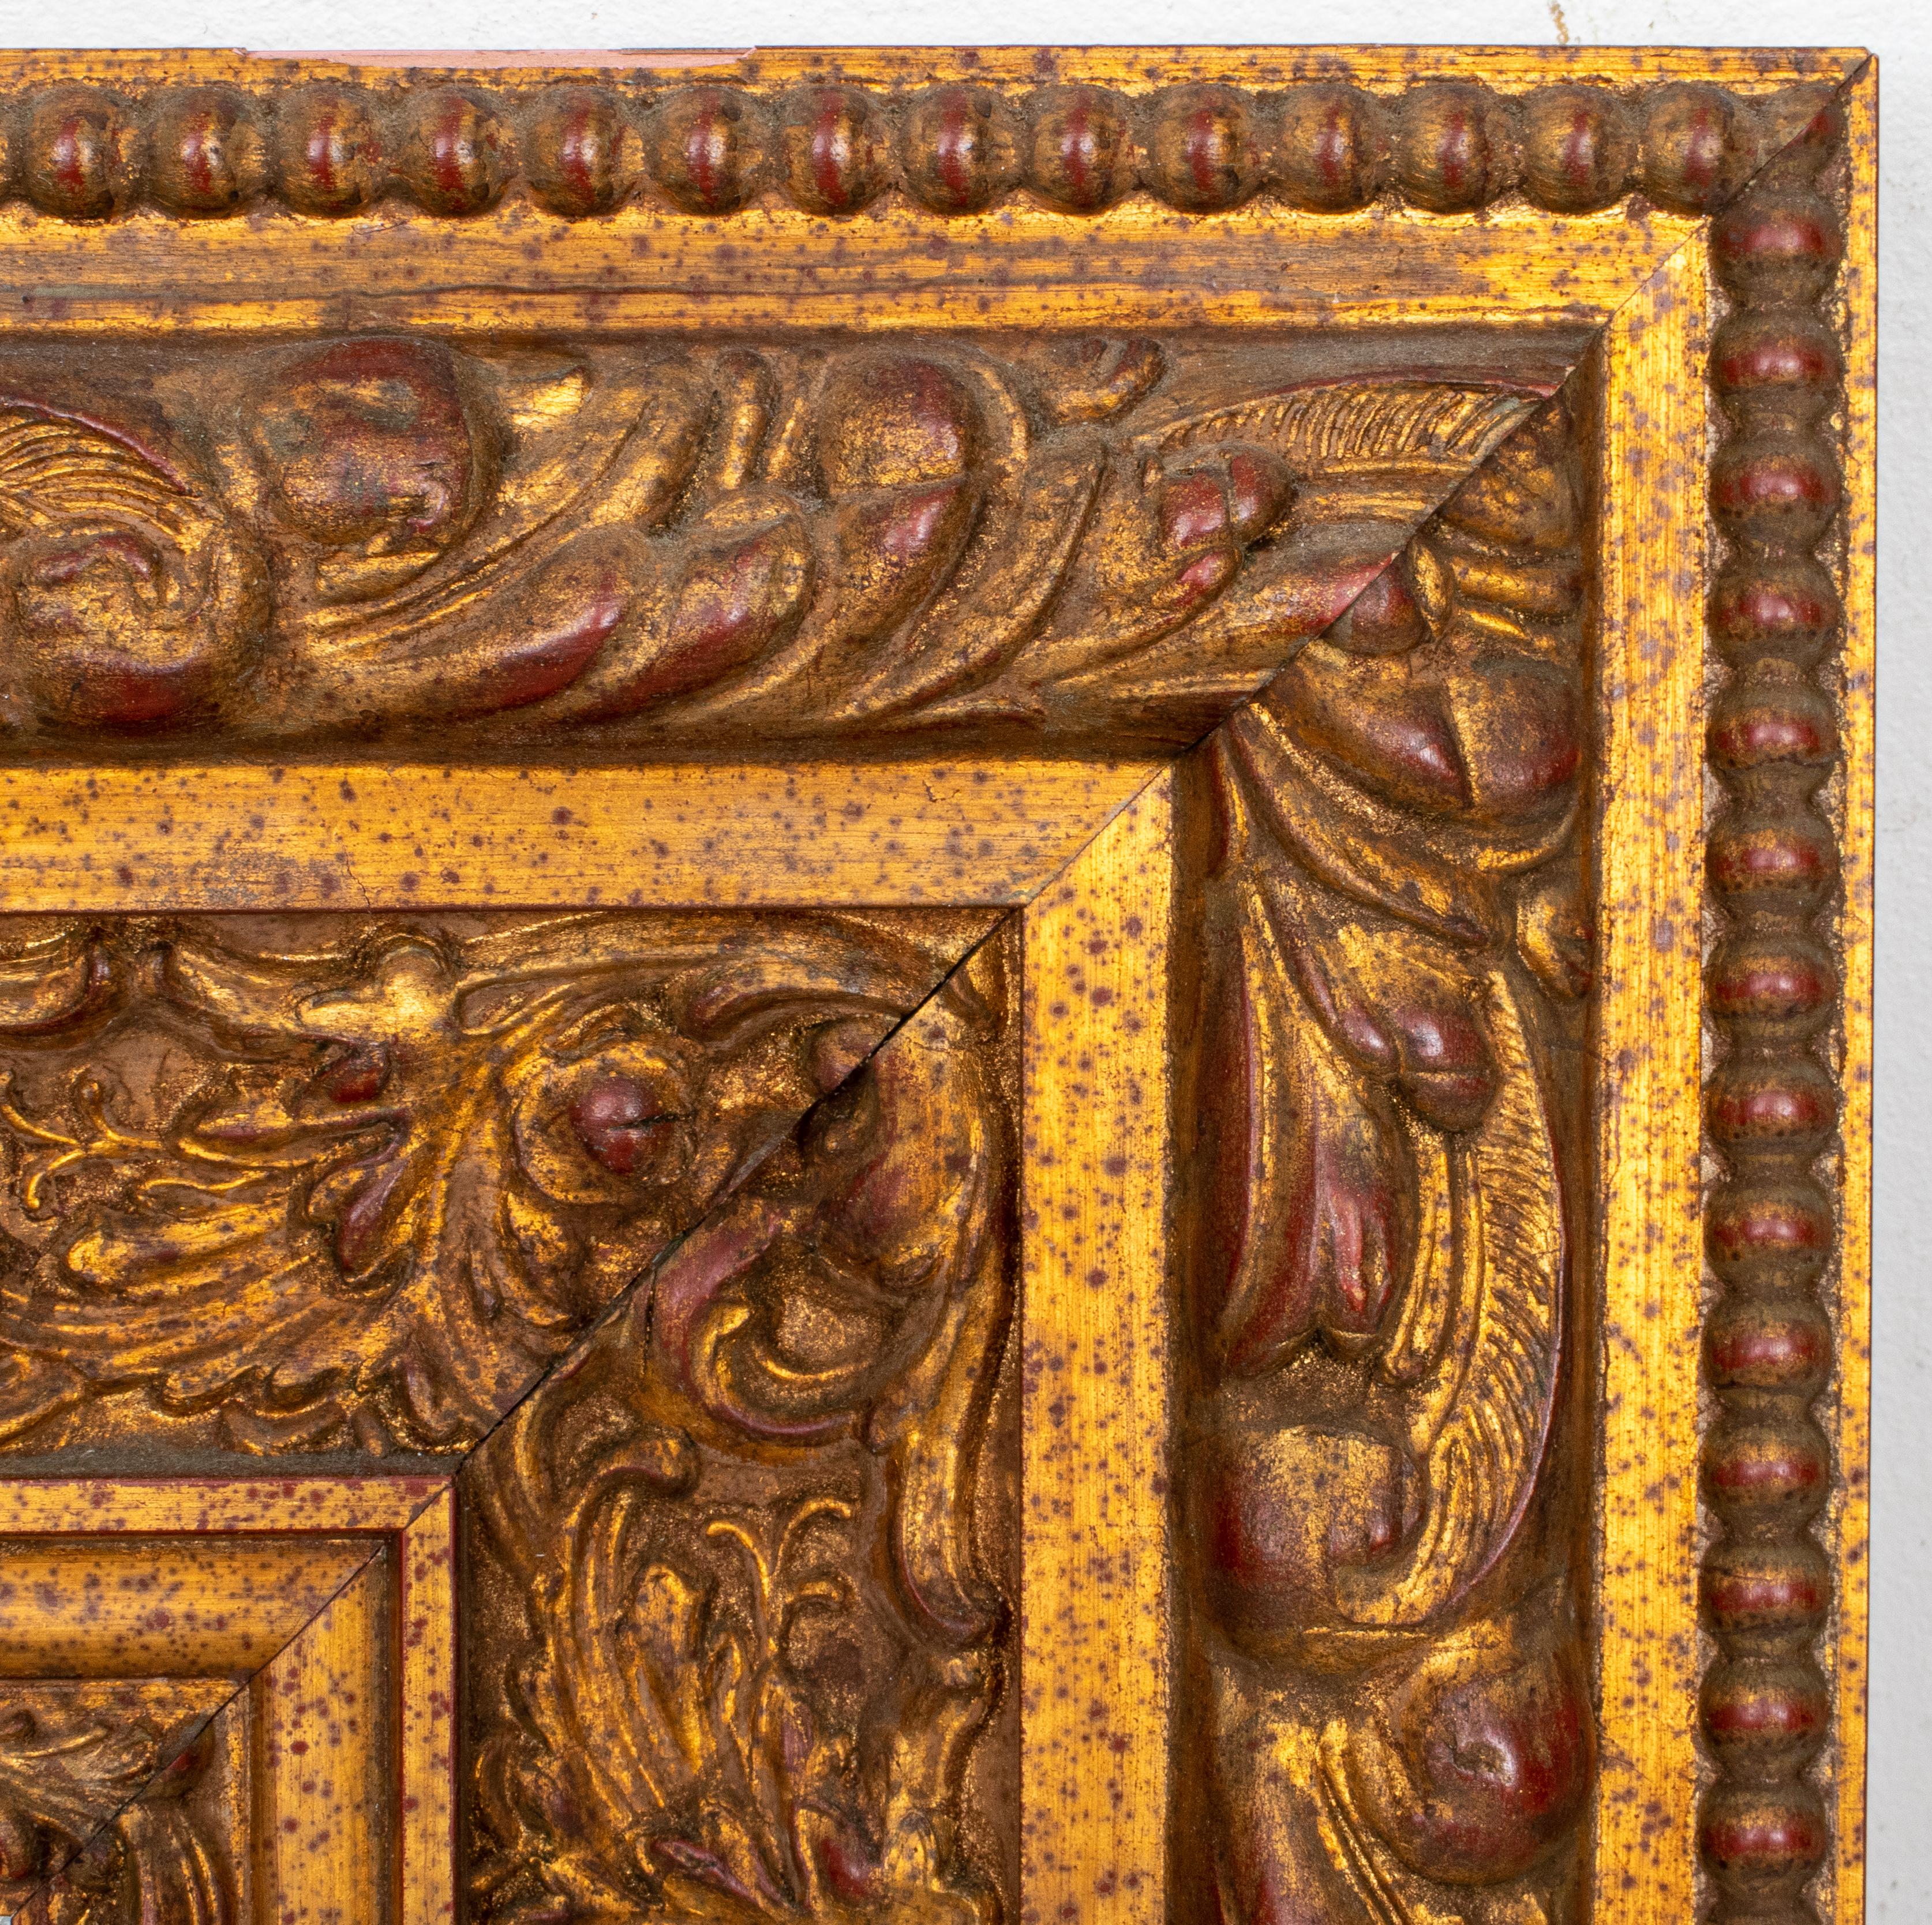 Cadre à décor d'or de style Renaissance italienne, dans le goût du XVIe siècle, centrant un miroir biseauté entouré de motifs sculptés de feuillages et de moissons dans une bordure perlée. 

Mesures : 22